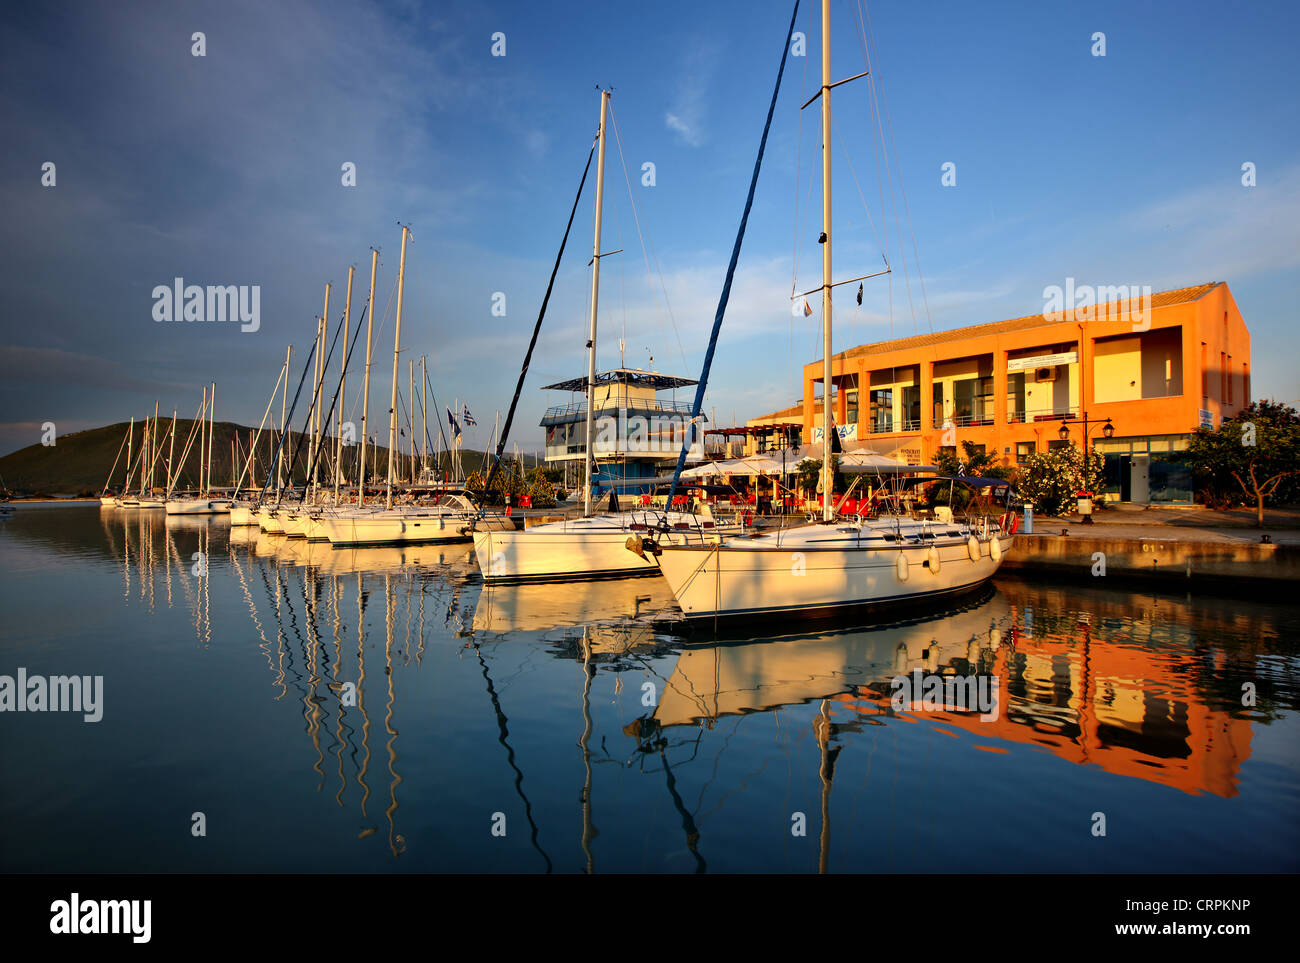 The marina in Lefkada (or 'Lefkas') town, Lefkada island, Ionian Sea, Eptanisa ('Seven Islands'), Greece Stock Photo